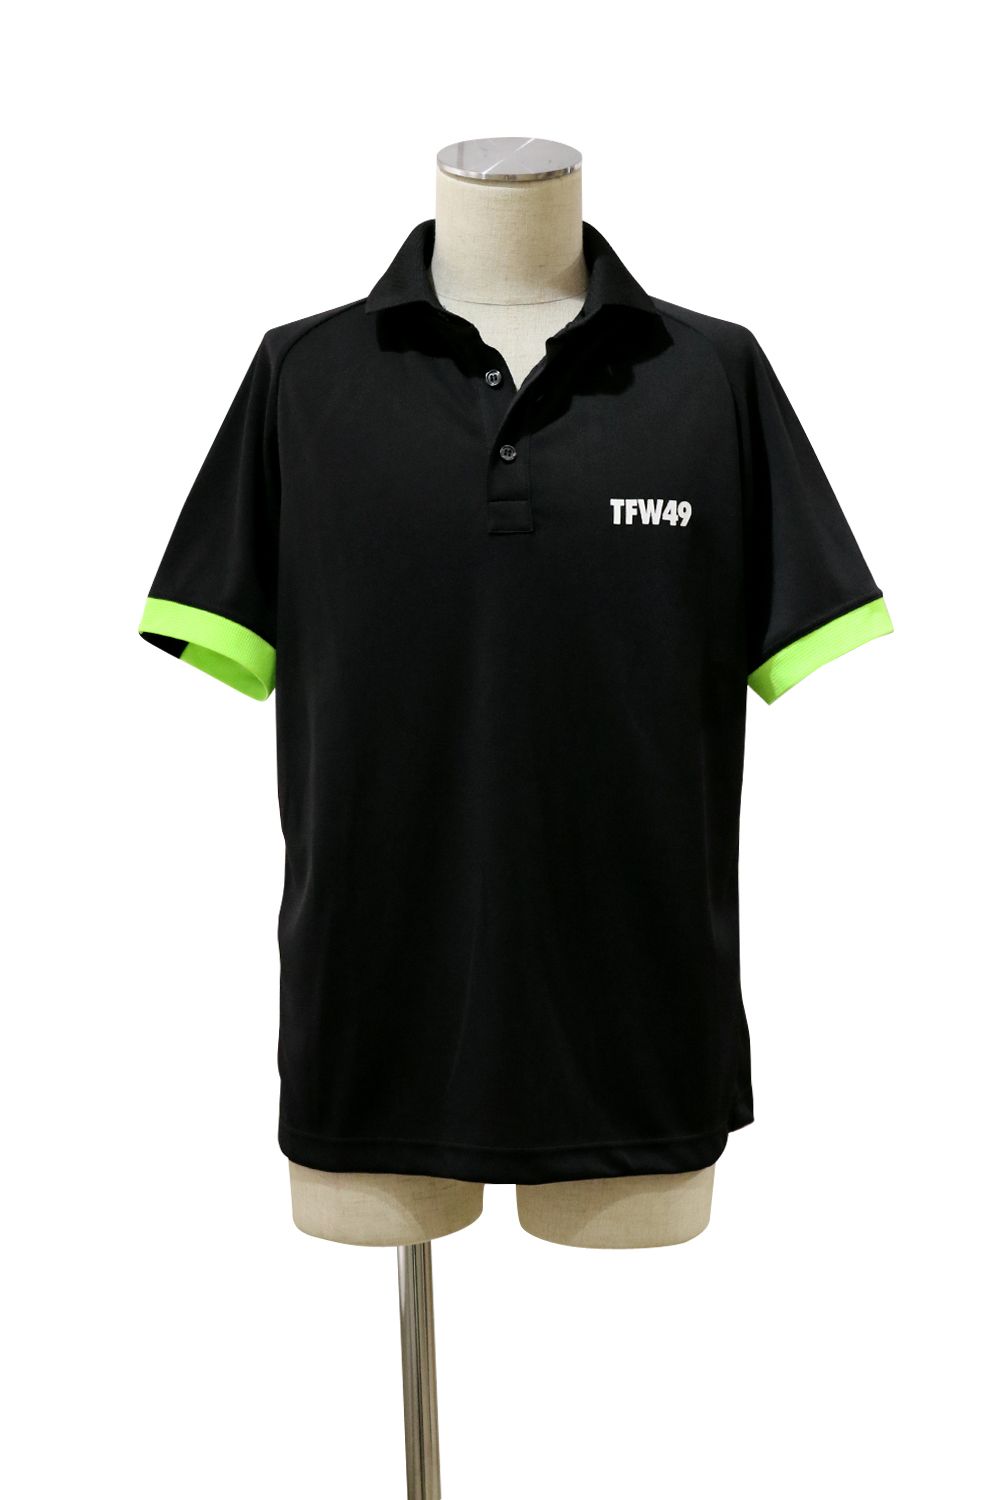 TFW49よりポロシャツ、シューズ、キャップなど人気アイテムが入荷